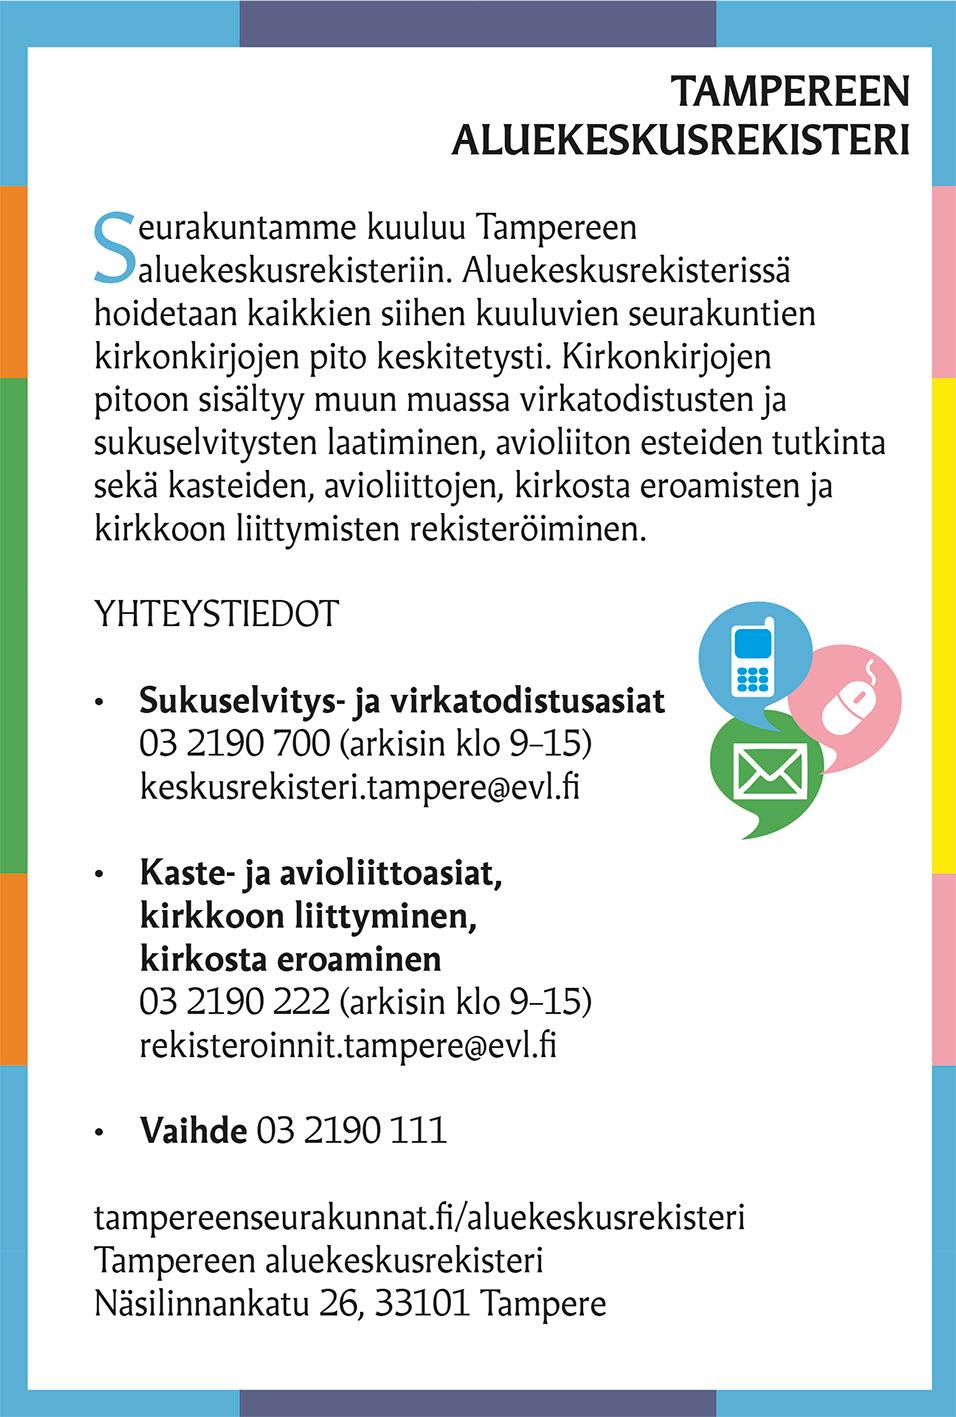 Tampereen aluekeskusrekisteri, tiedote